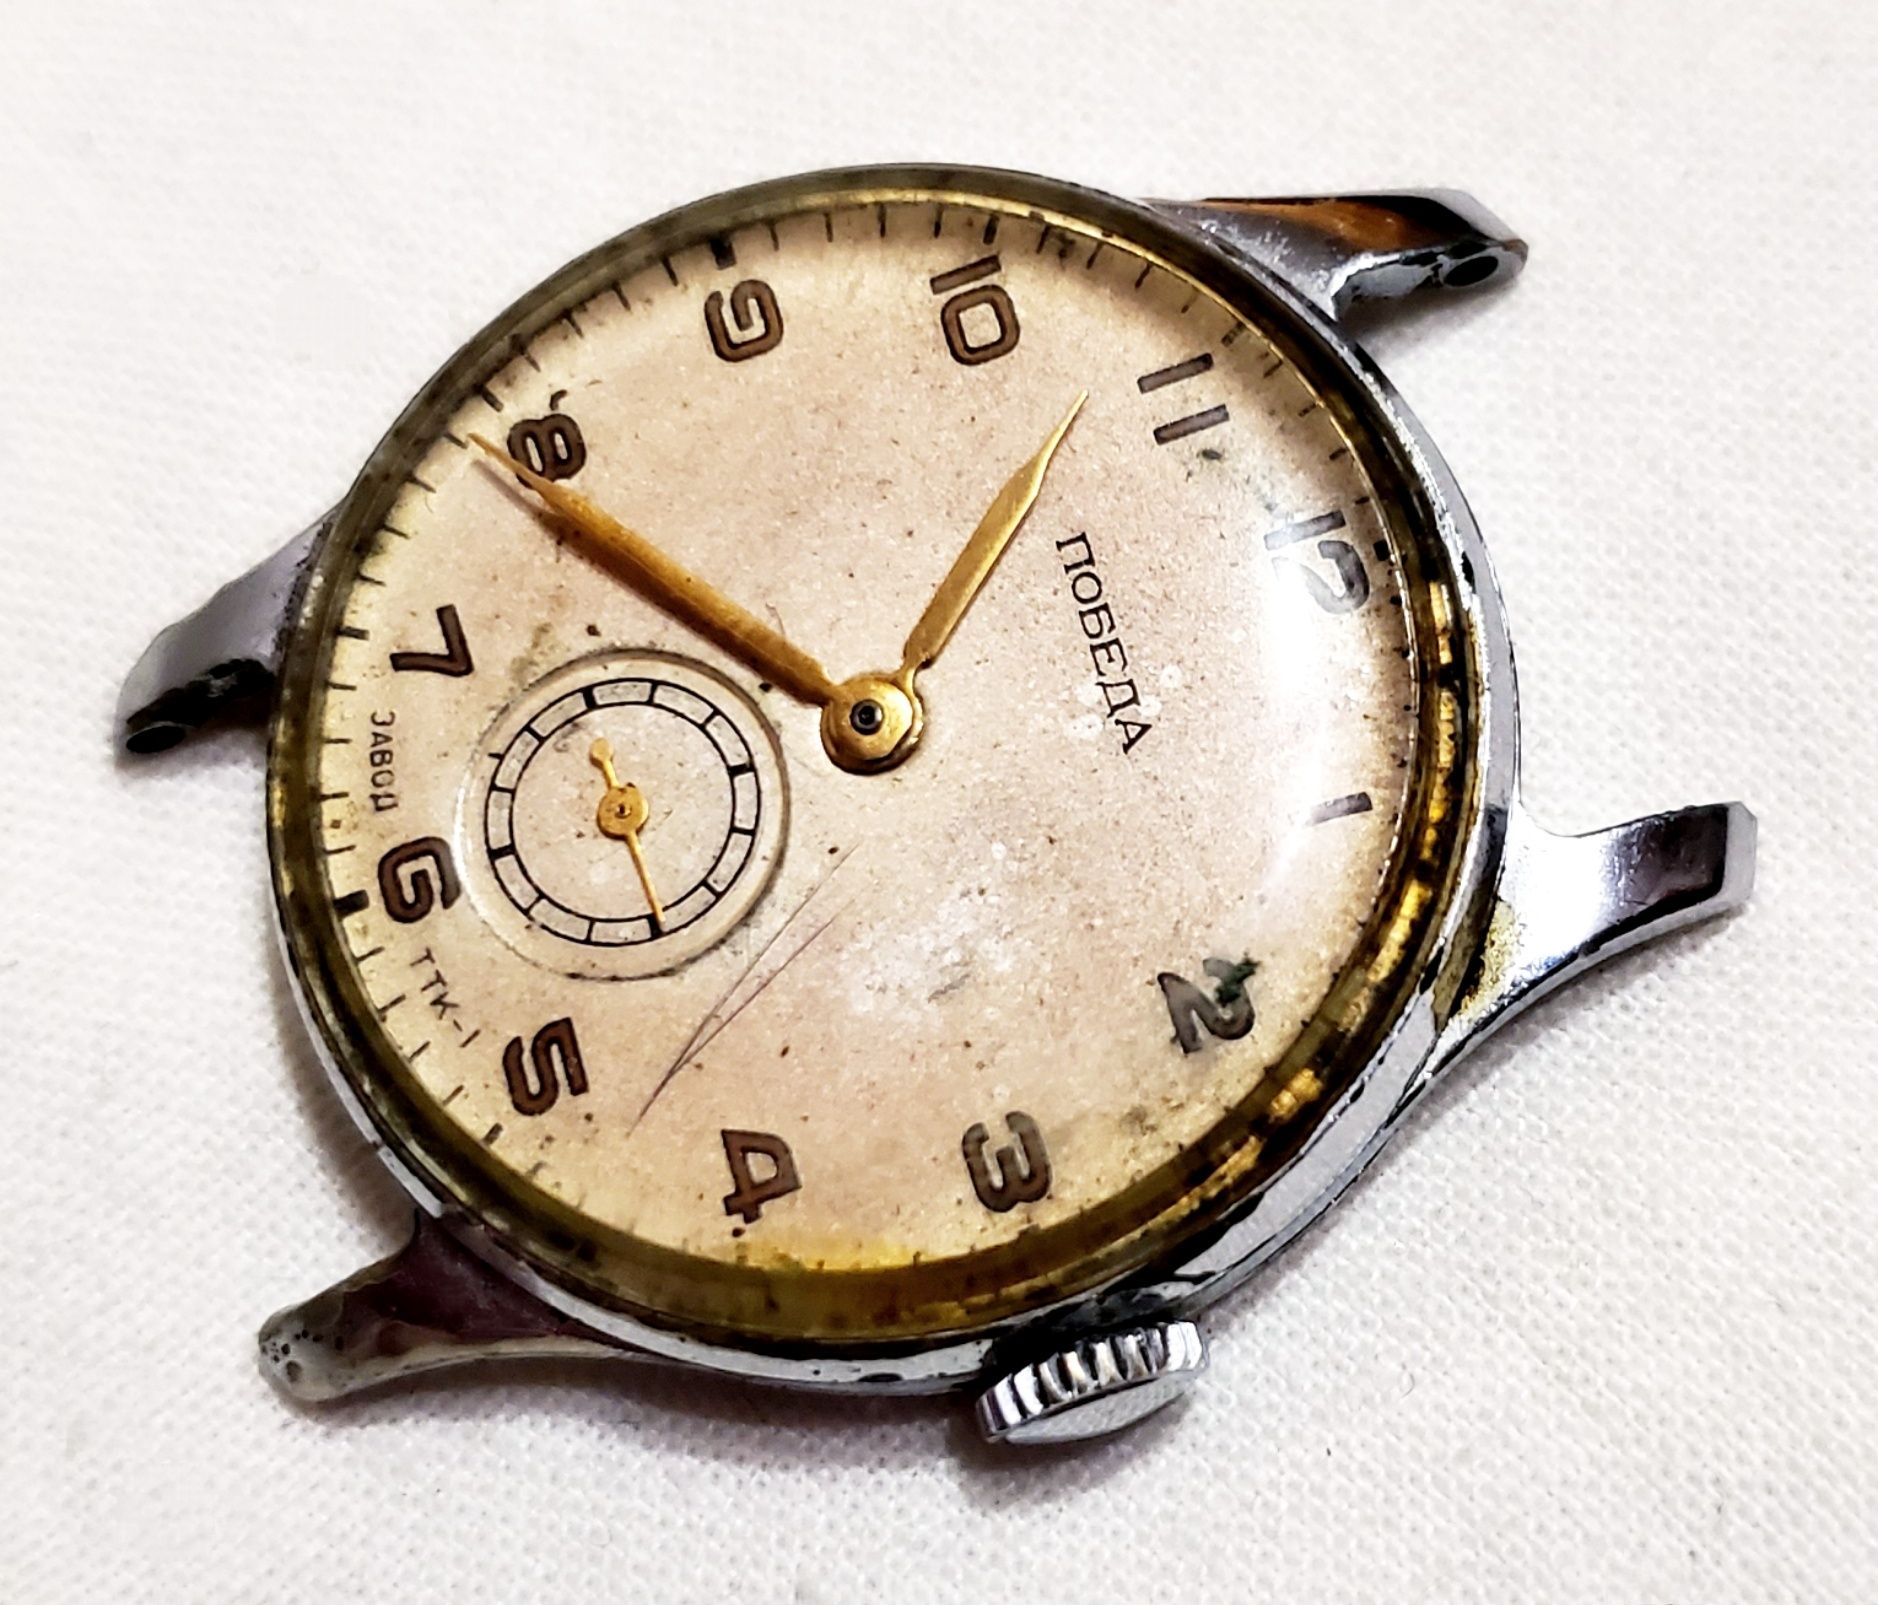 Механические часы Победа ТТК-1 камней 15 1МЧЗ 1953 года времён ссср